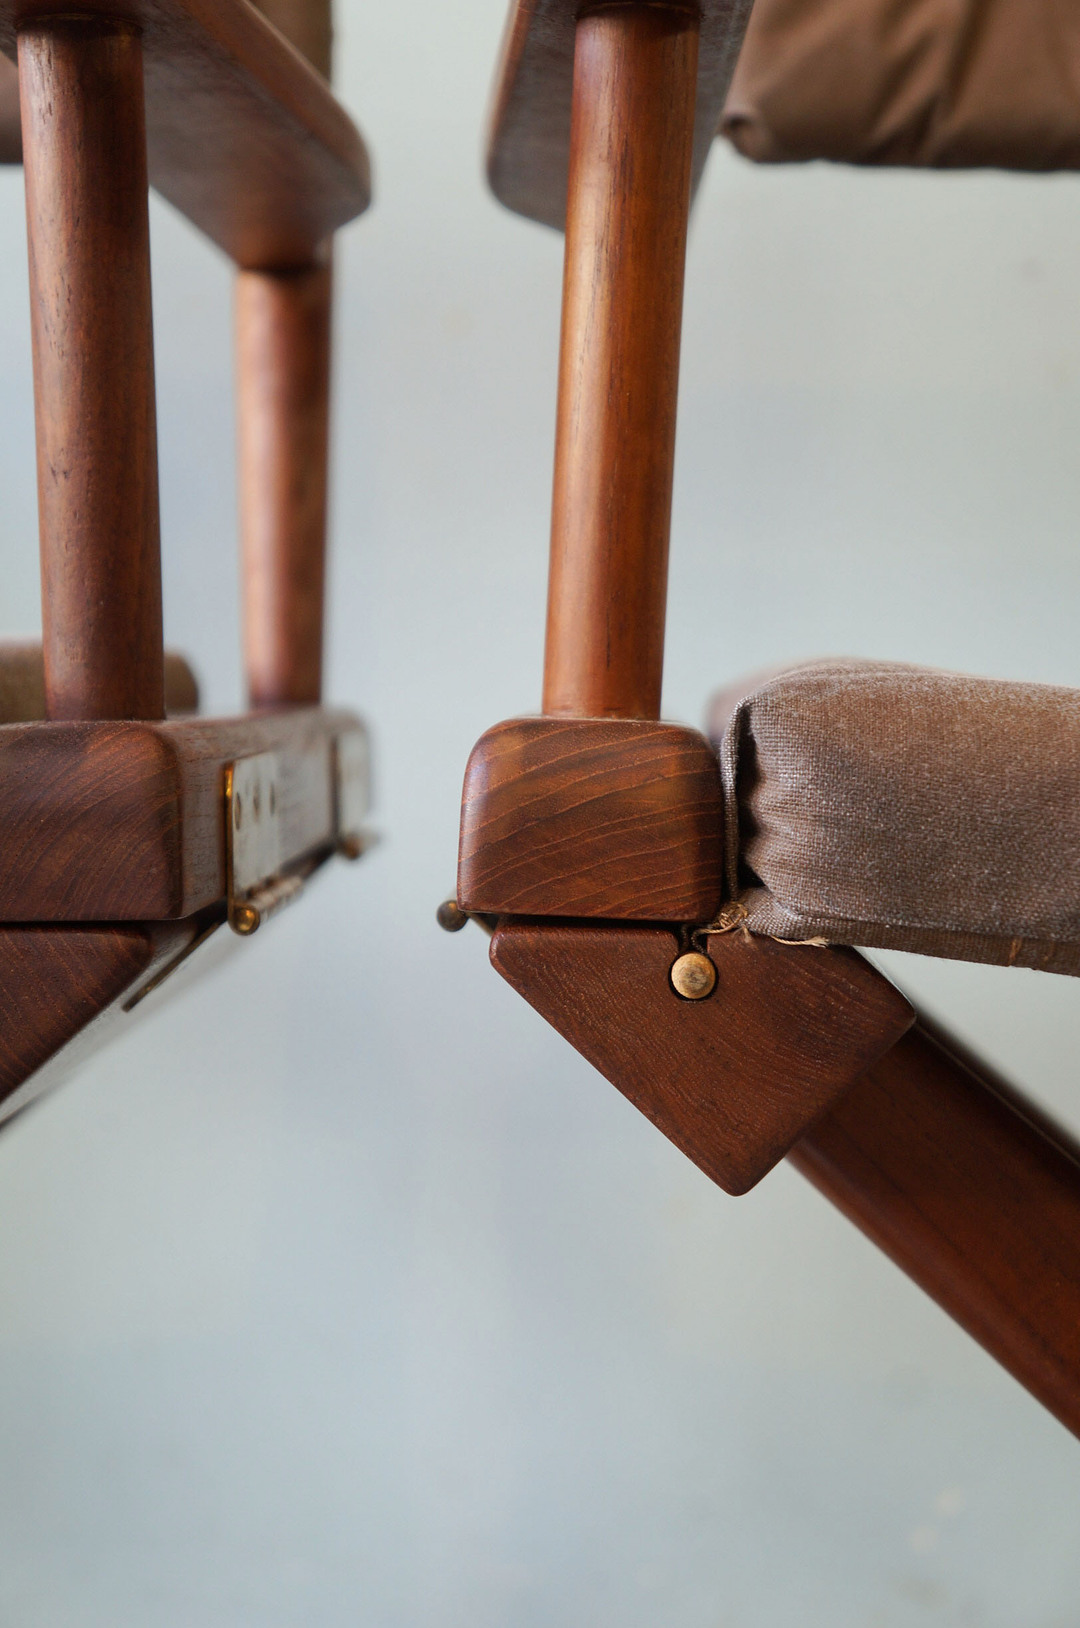 Wooden Director’s Chair/ディレクターズチェア 折りたたみ 椅子 USモダン アウトドア